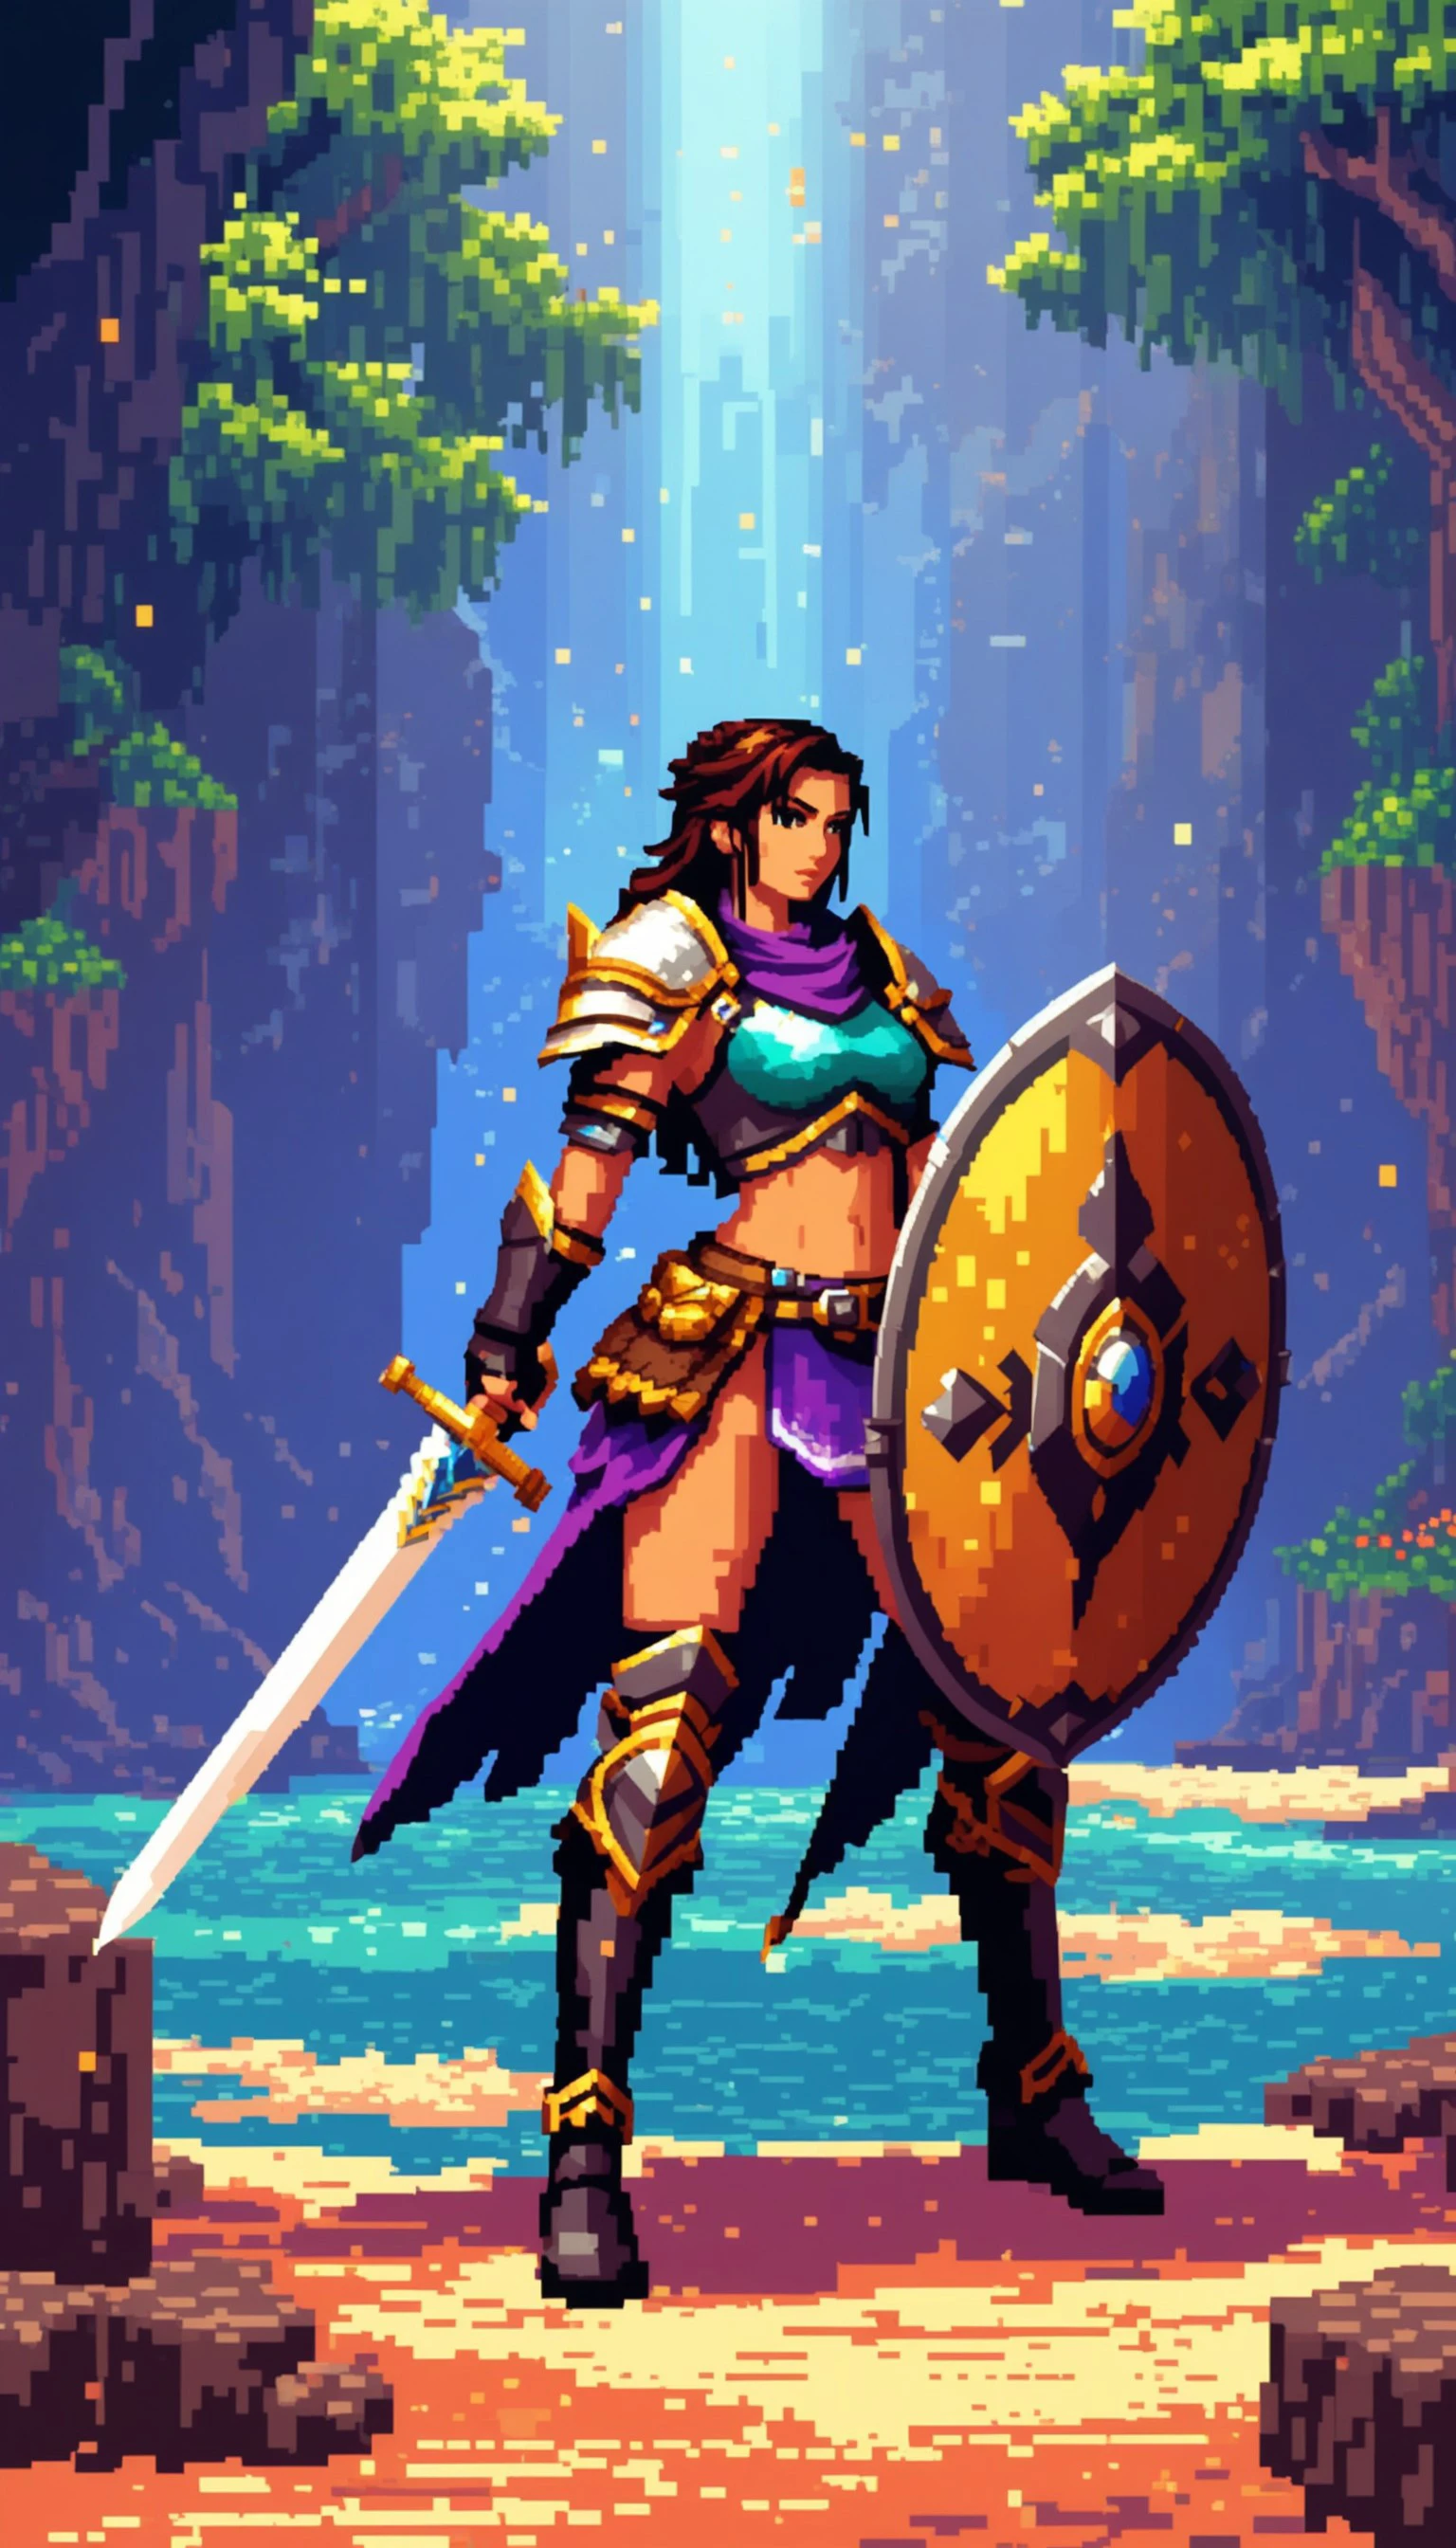 Arte en píxeles de una guerrera feroz con una espada y un escudo en un entorno de fantasía, con colores vibrantes, iluminación dinámica, y un dramático, humor épico